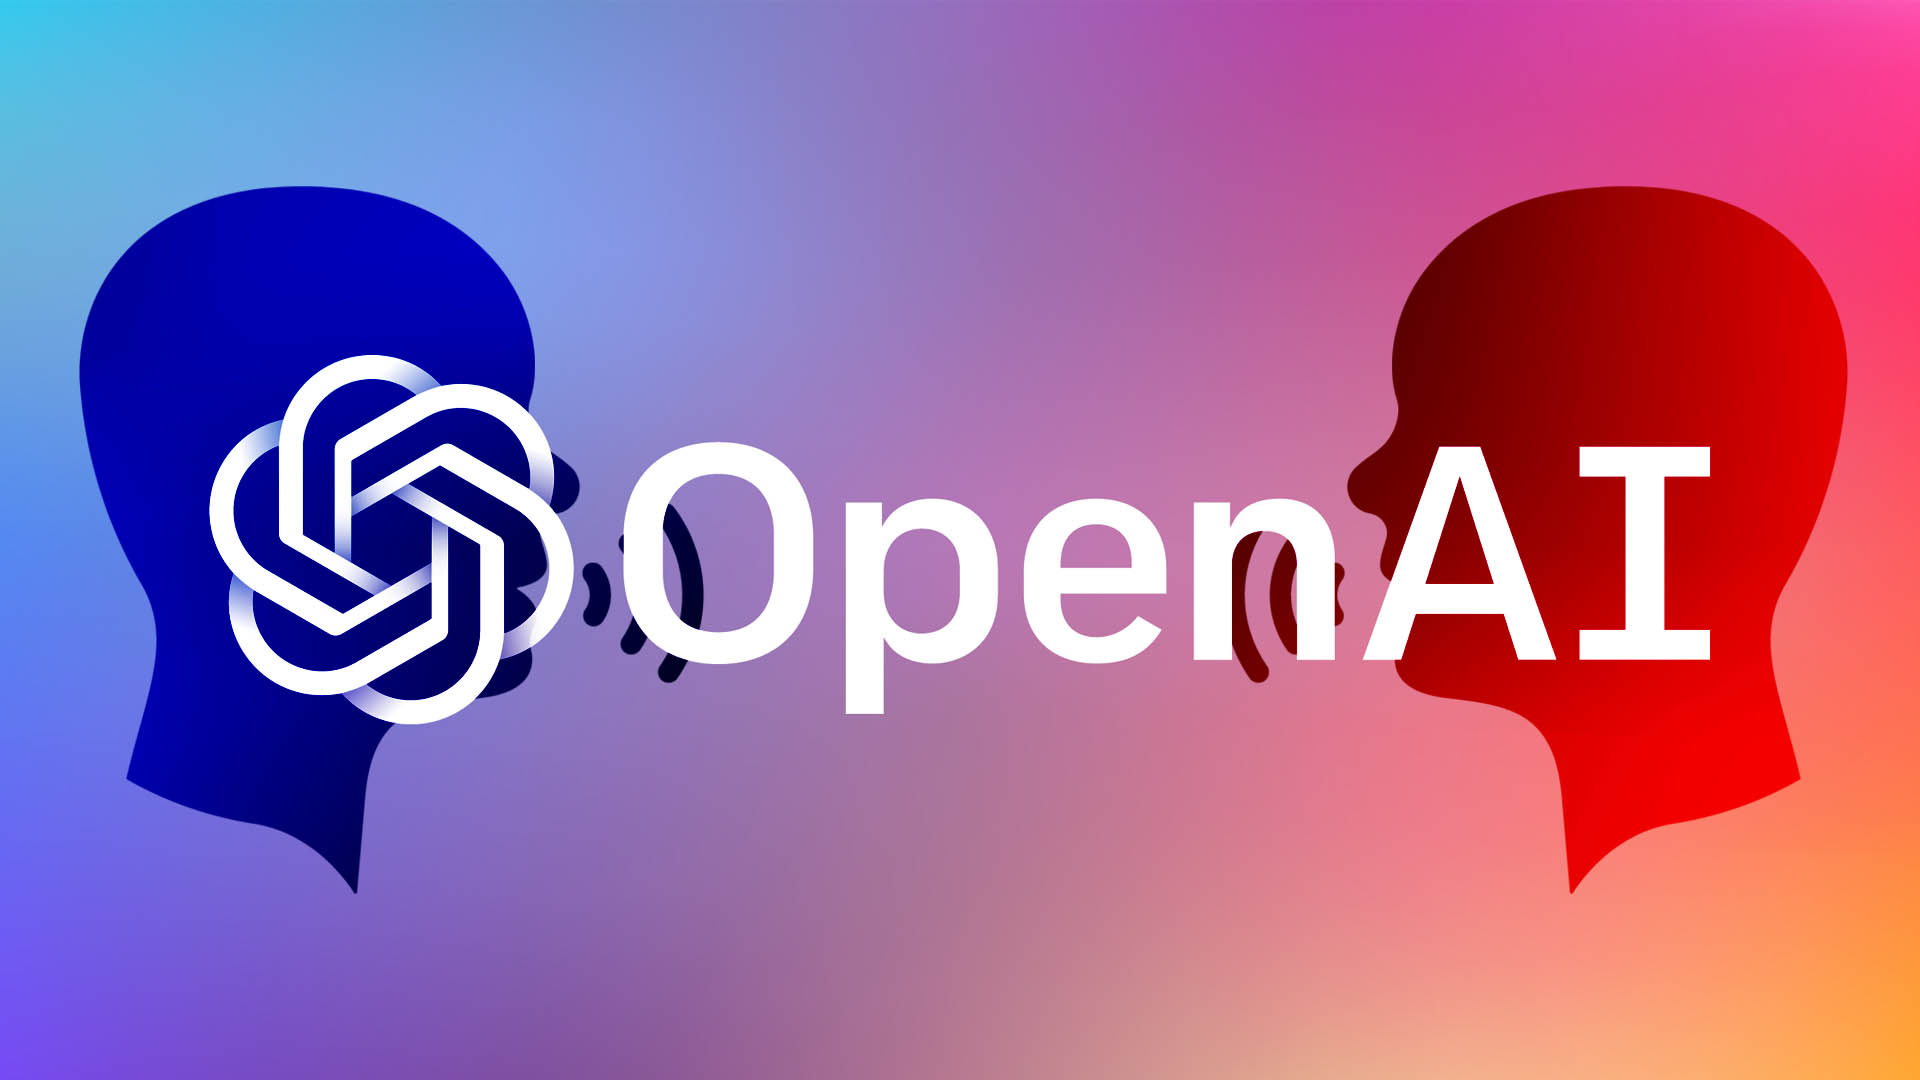 OpenAI gør ikke nok for at rette op på unøjagtigheder i ChatGPT-svar - konkluderer EU's vagthund for privatlivets fred